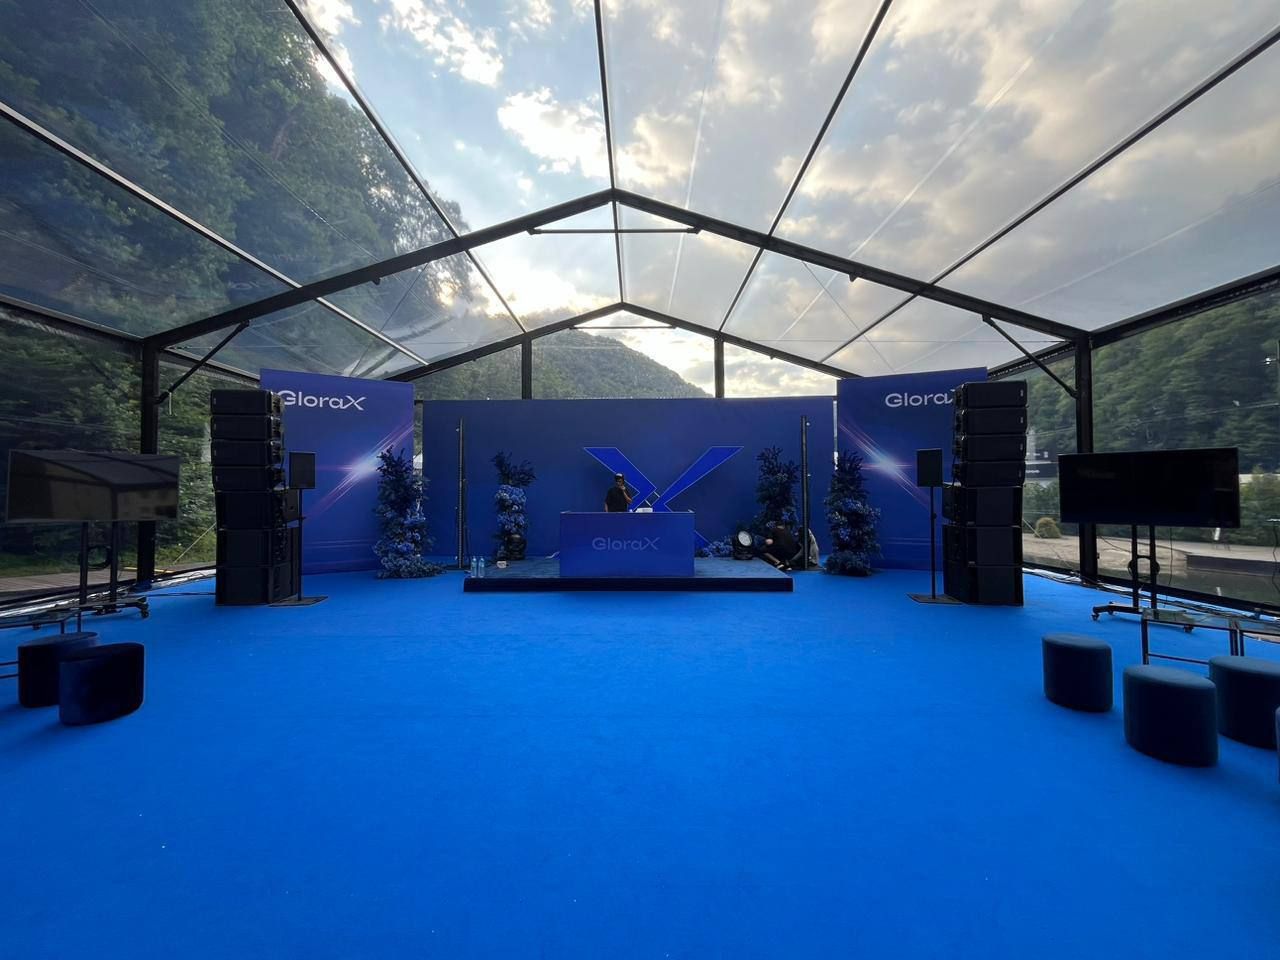 Аренда двускатного черного шатра 450м2 с прозрачной крышей для проведения мероприятия компании Глоракс в г. Сочи, Роза бич